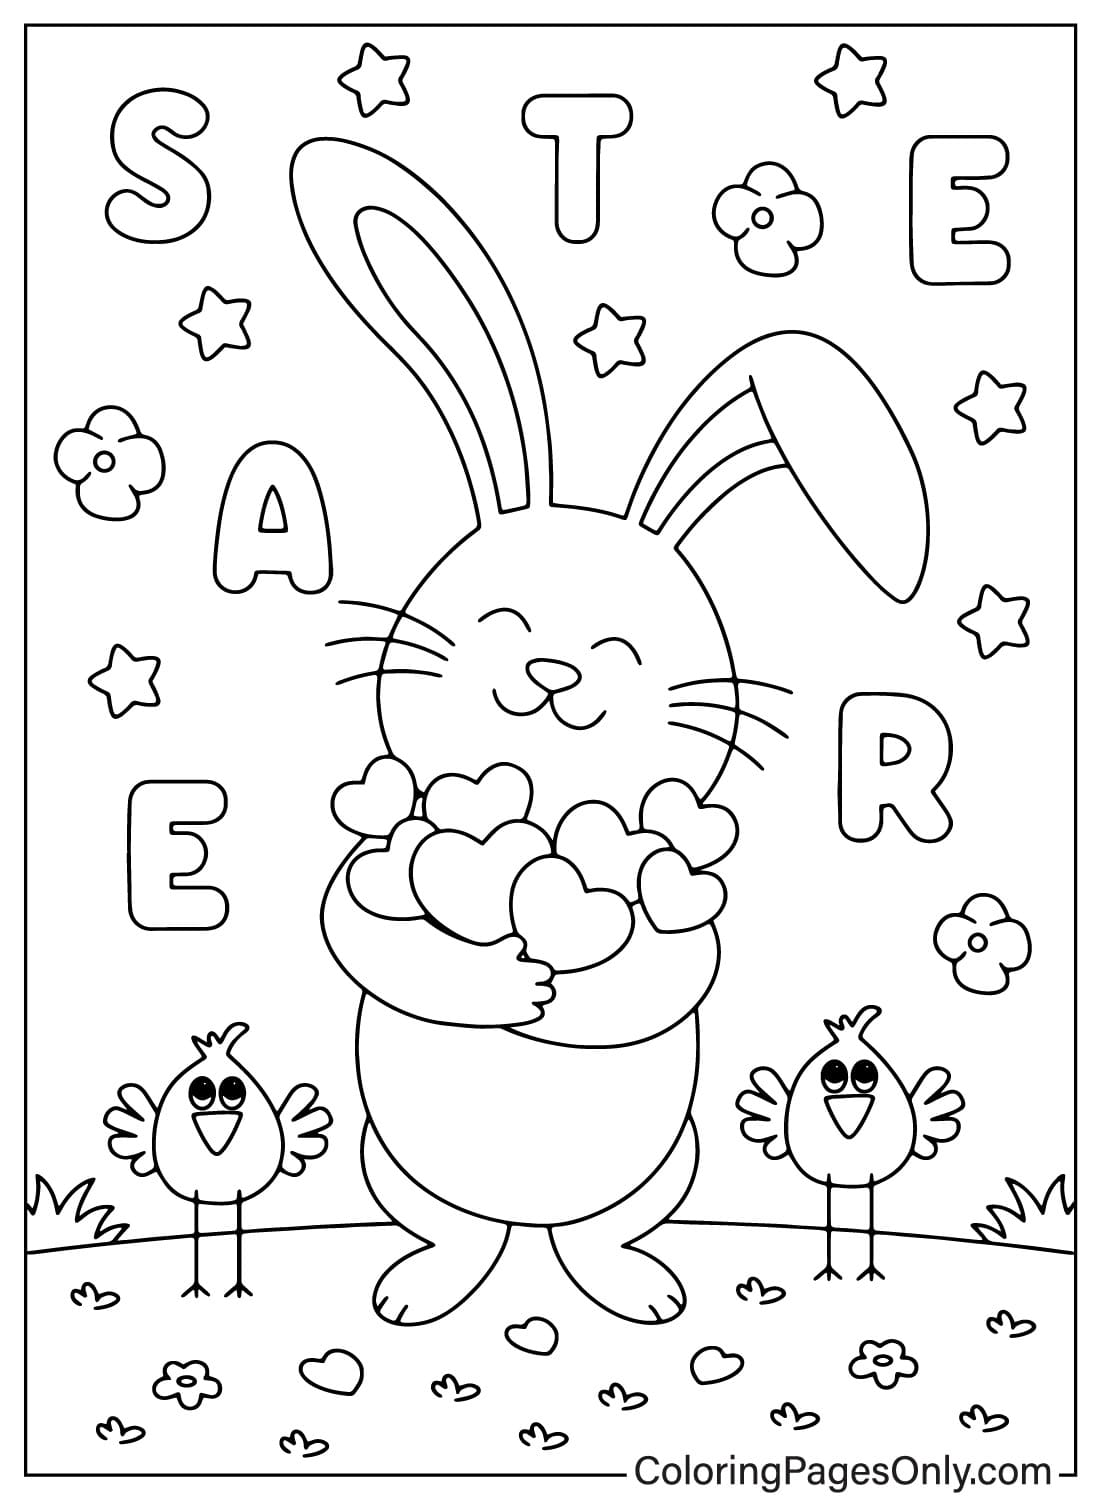 Coloriage de carte de Pâques imprimable gratuitement à partir de la carte de Pâques